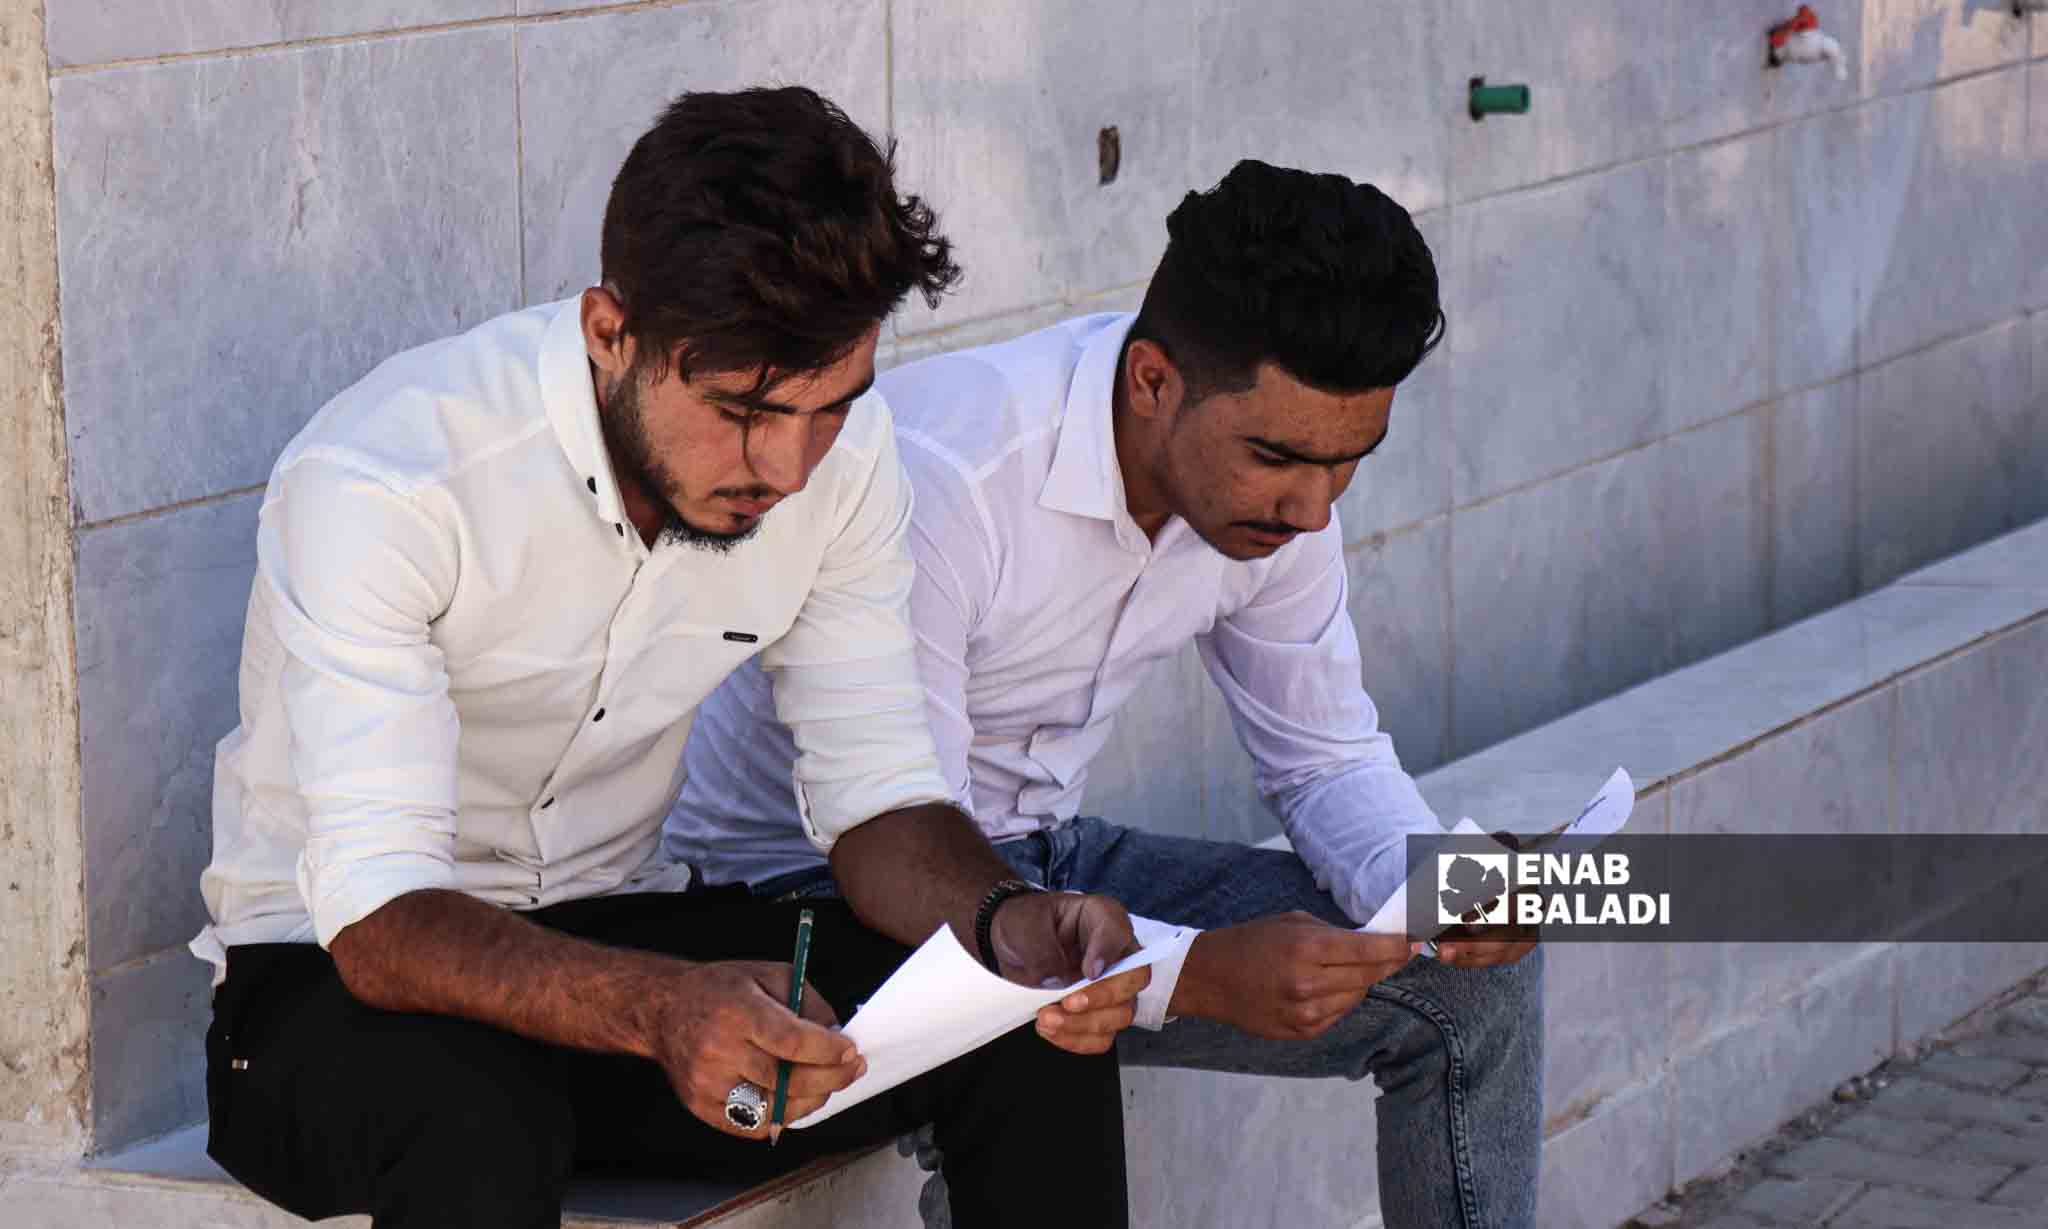 طالبان يراجعان معلوماتهم قبل الدخول لقاعة الامتحان  - 5 من تموز 2023 (عنب بلدي/ حسين شعبو)